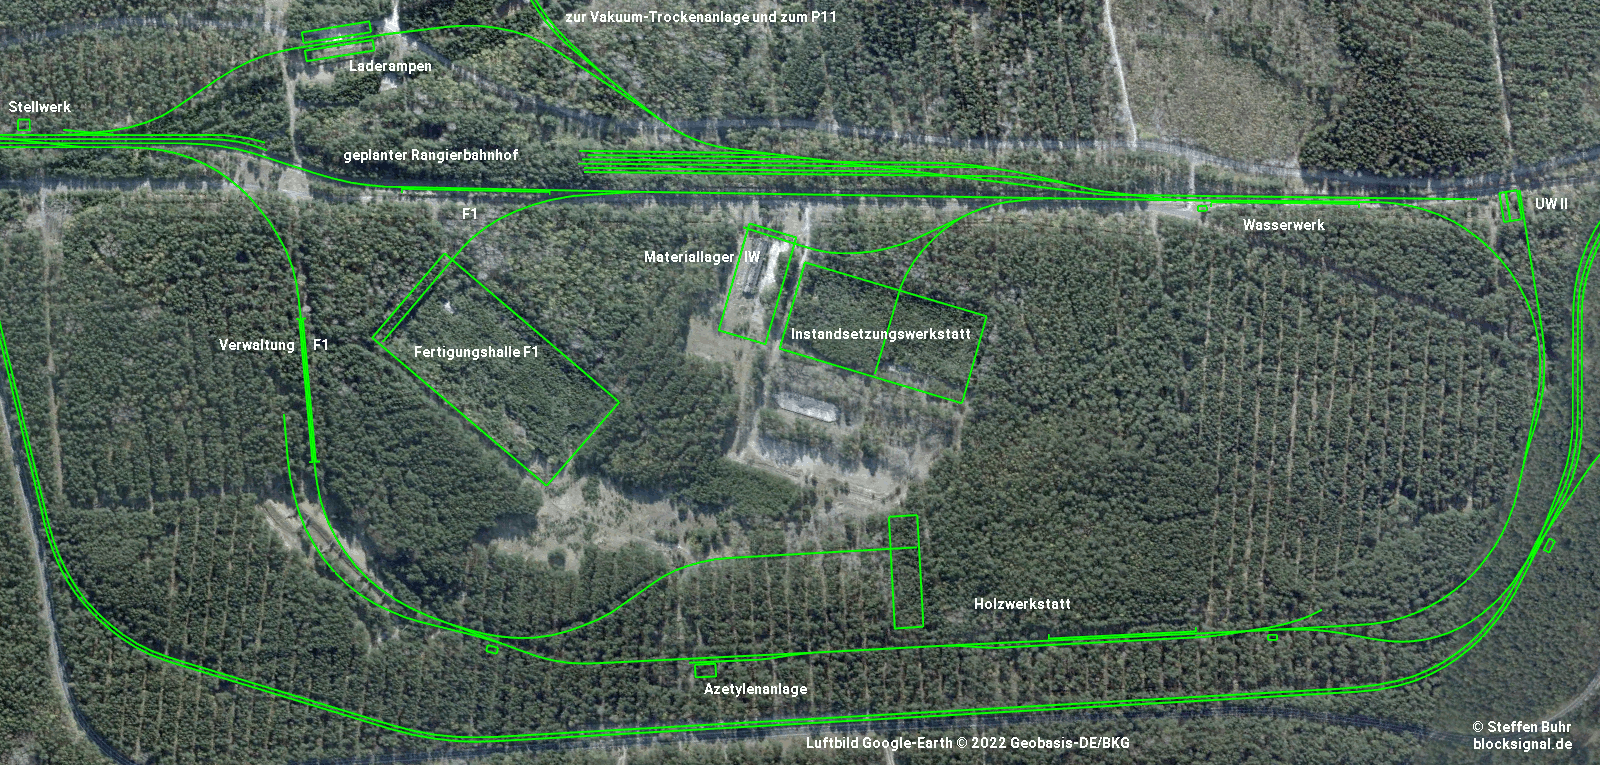 Gleisanlagen als grüne Linien im Luftbild 2009, das den Bereich vom Zentralstellwerk bis zum Unterwerk II aus 1800 m Höhe zeigt